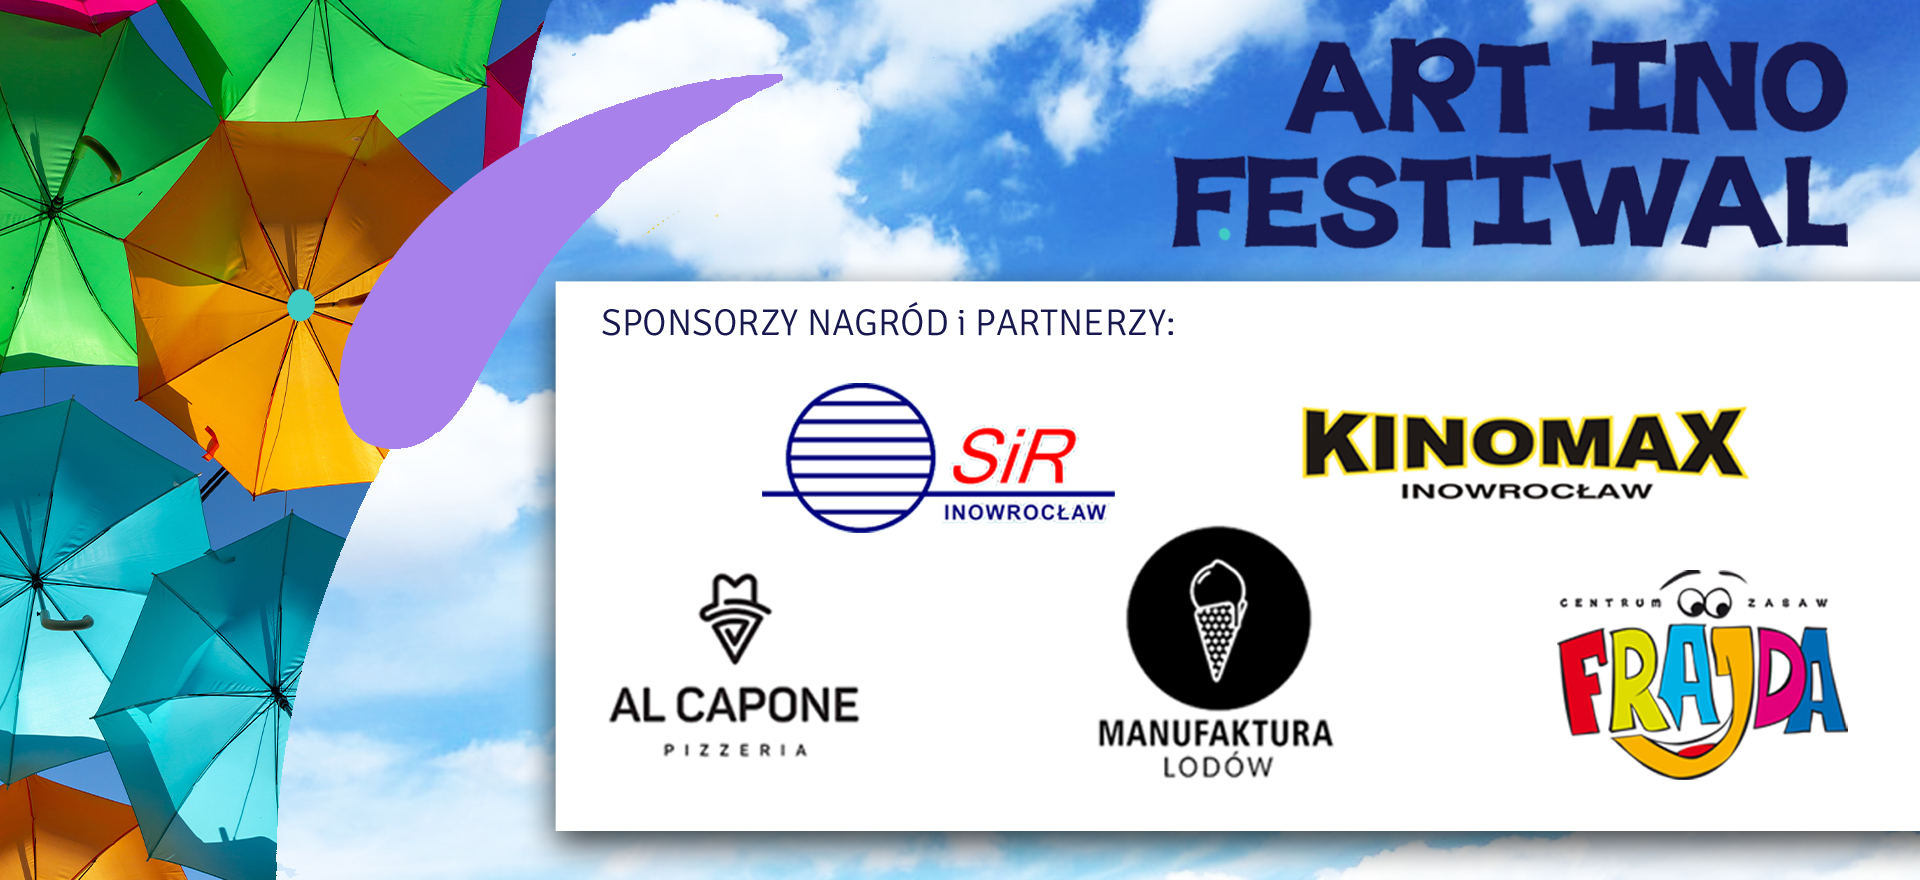 Grafika przedstawiająca logotypy sponsorów nagród, kolorowe parasolki oraz napis Art Ino Festiwal.